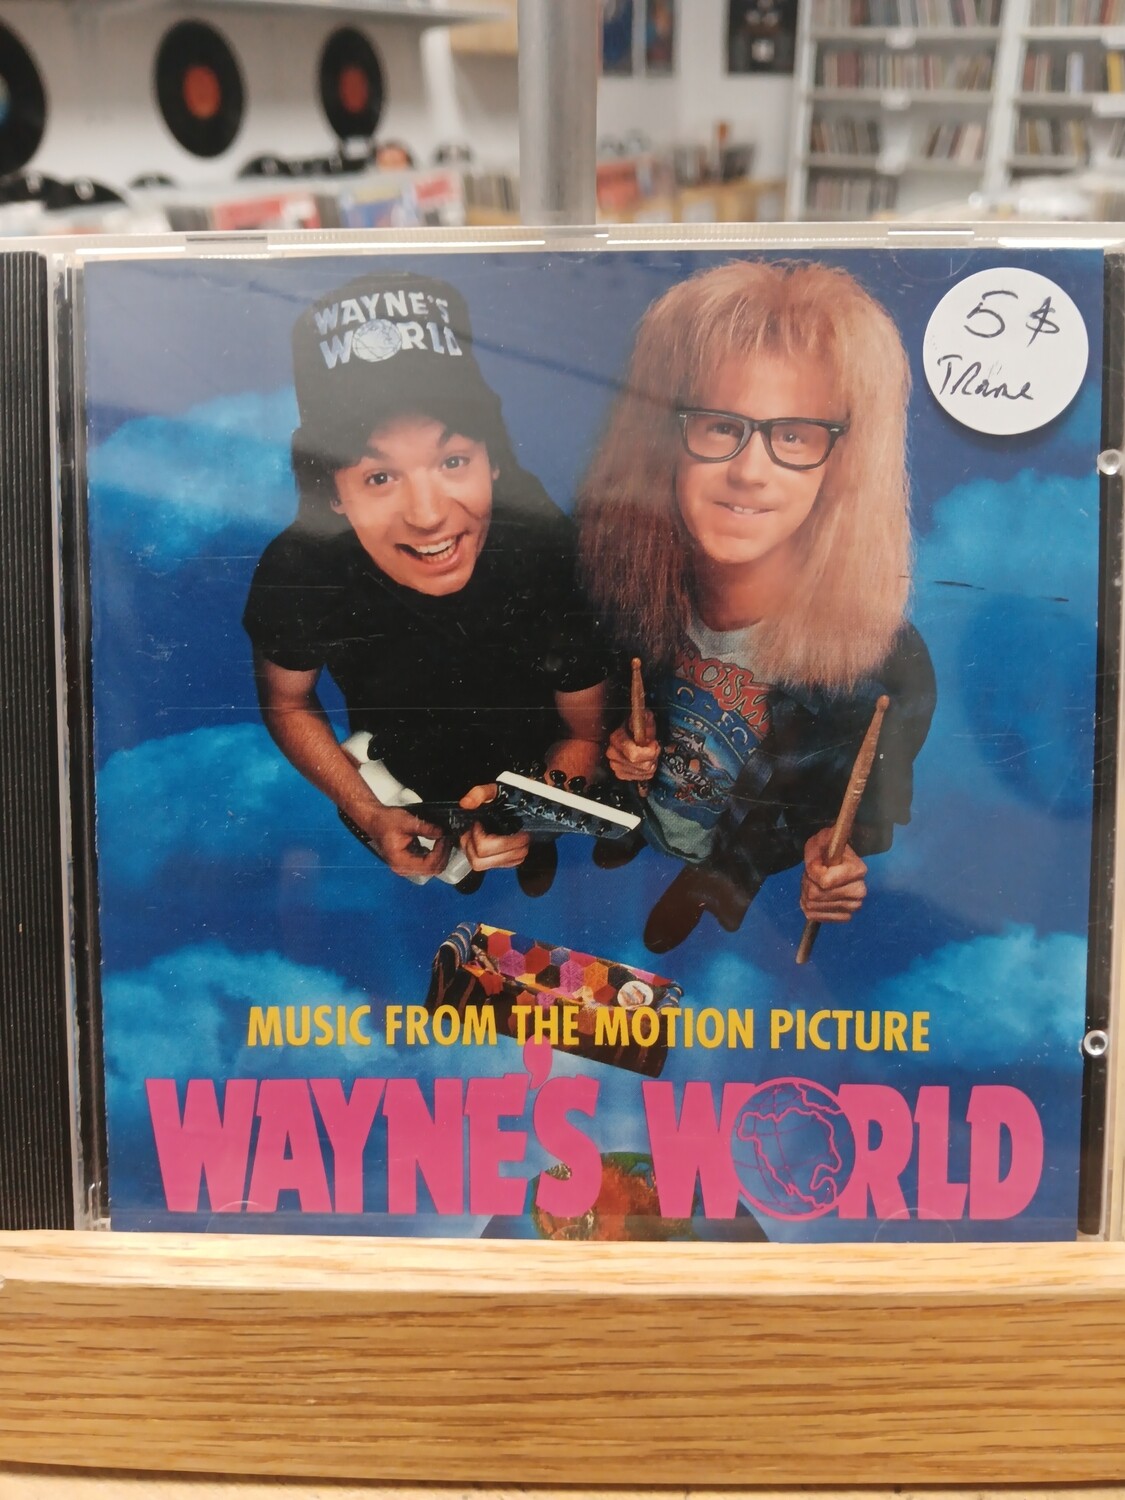 VARIOUS - Wayne's world soundtrack (CD)